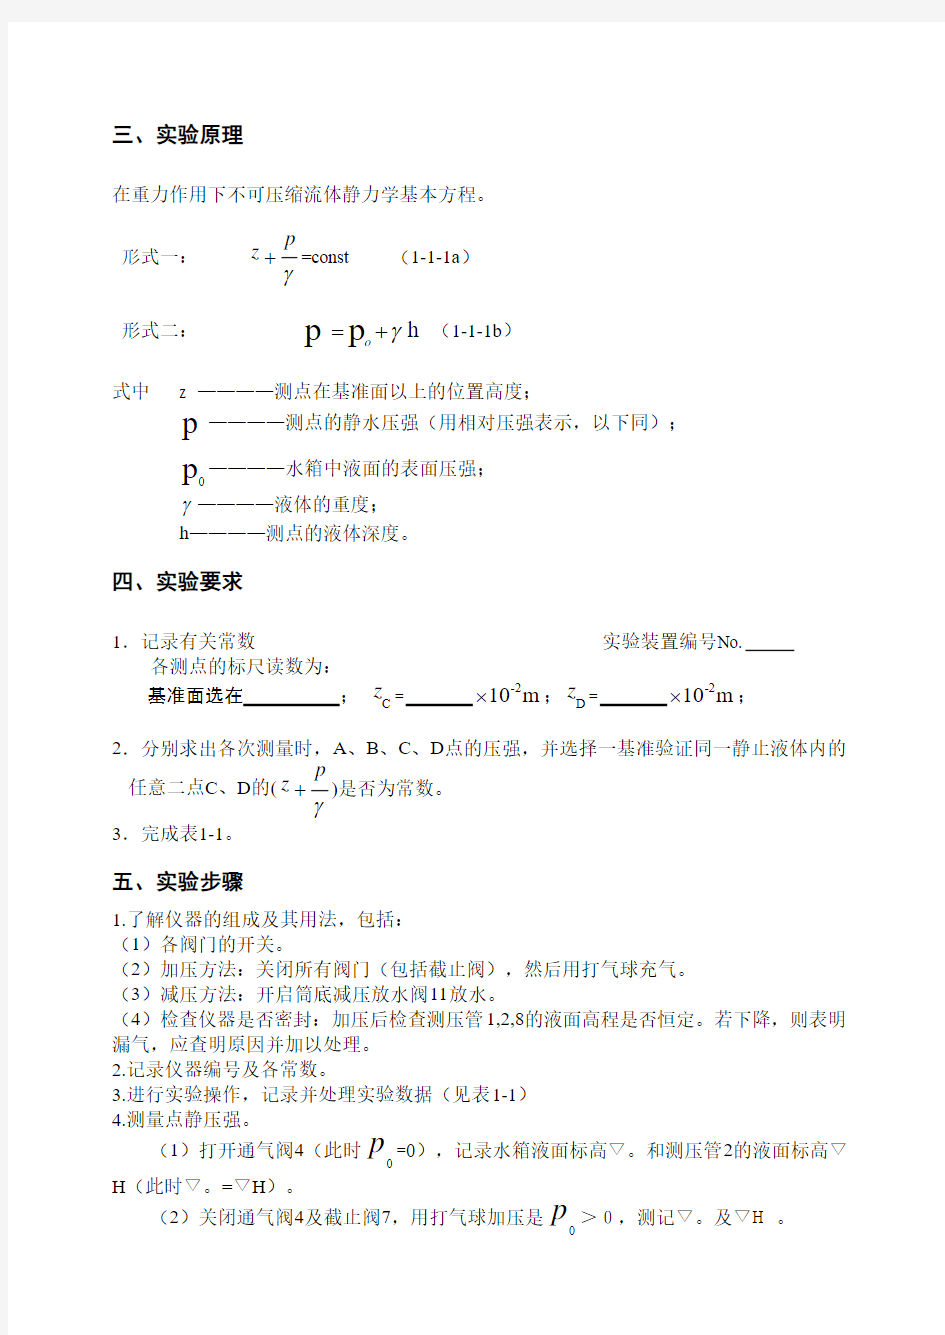 华中农业大学流体力学实验报告格式参考